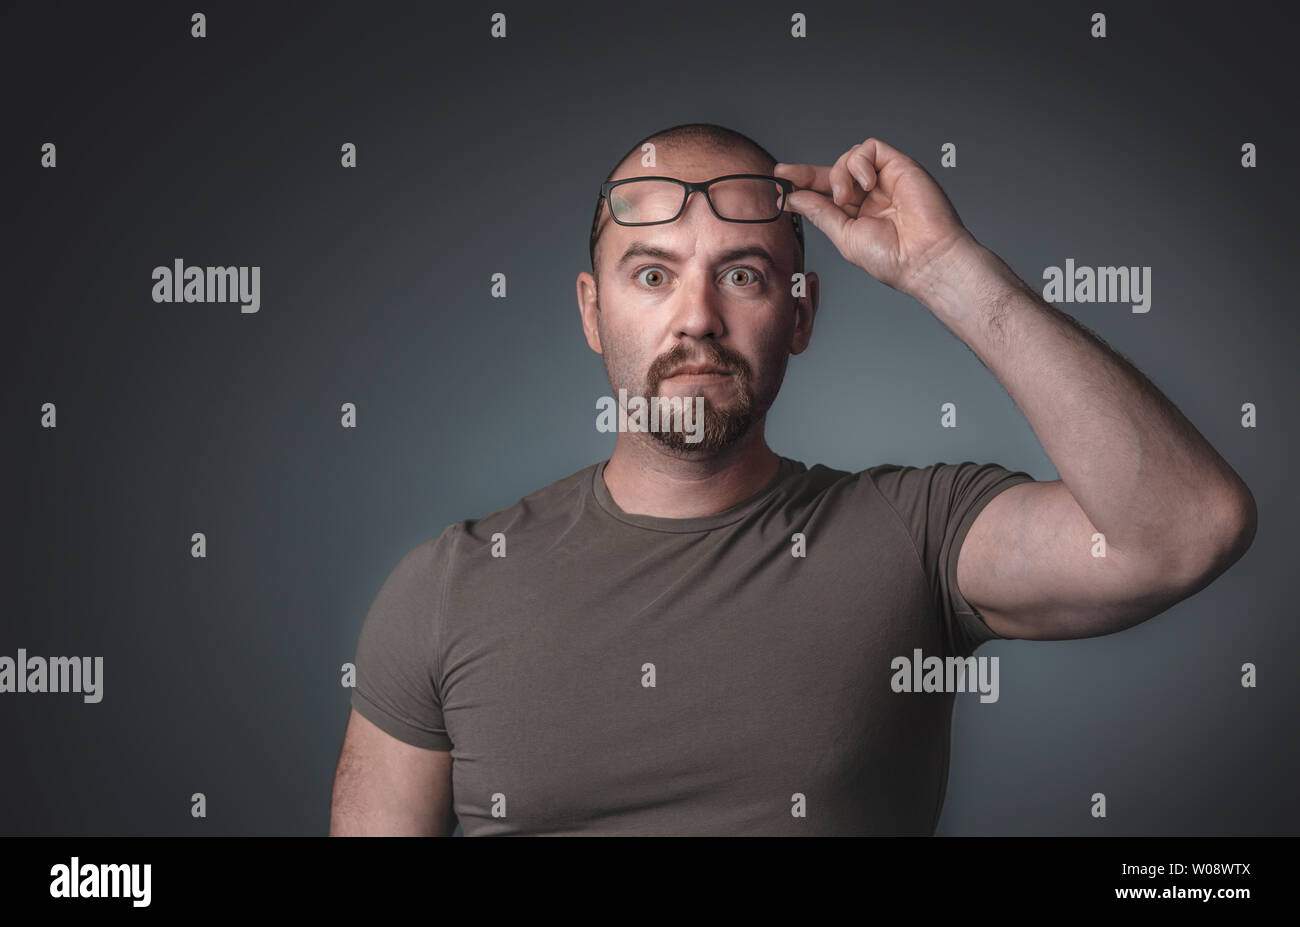 Retrato de un hombre con expresión sorprendida que levanta sus gafas, viste una camiseta, toma en el estudio. Foto de stock